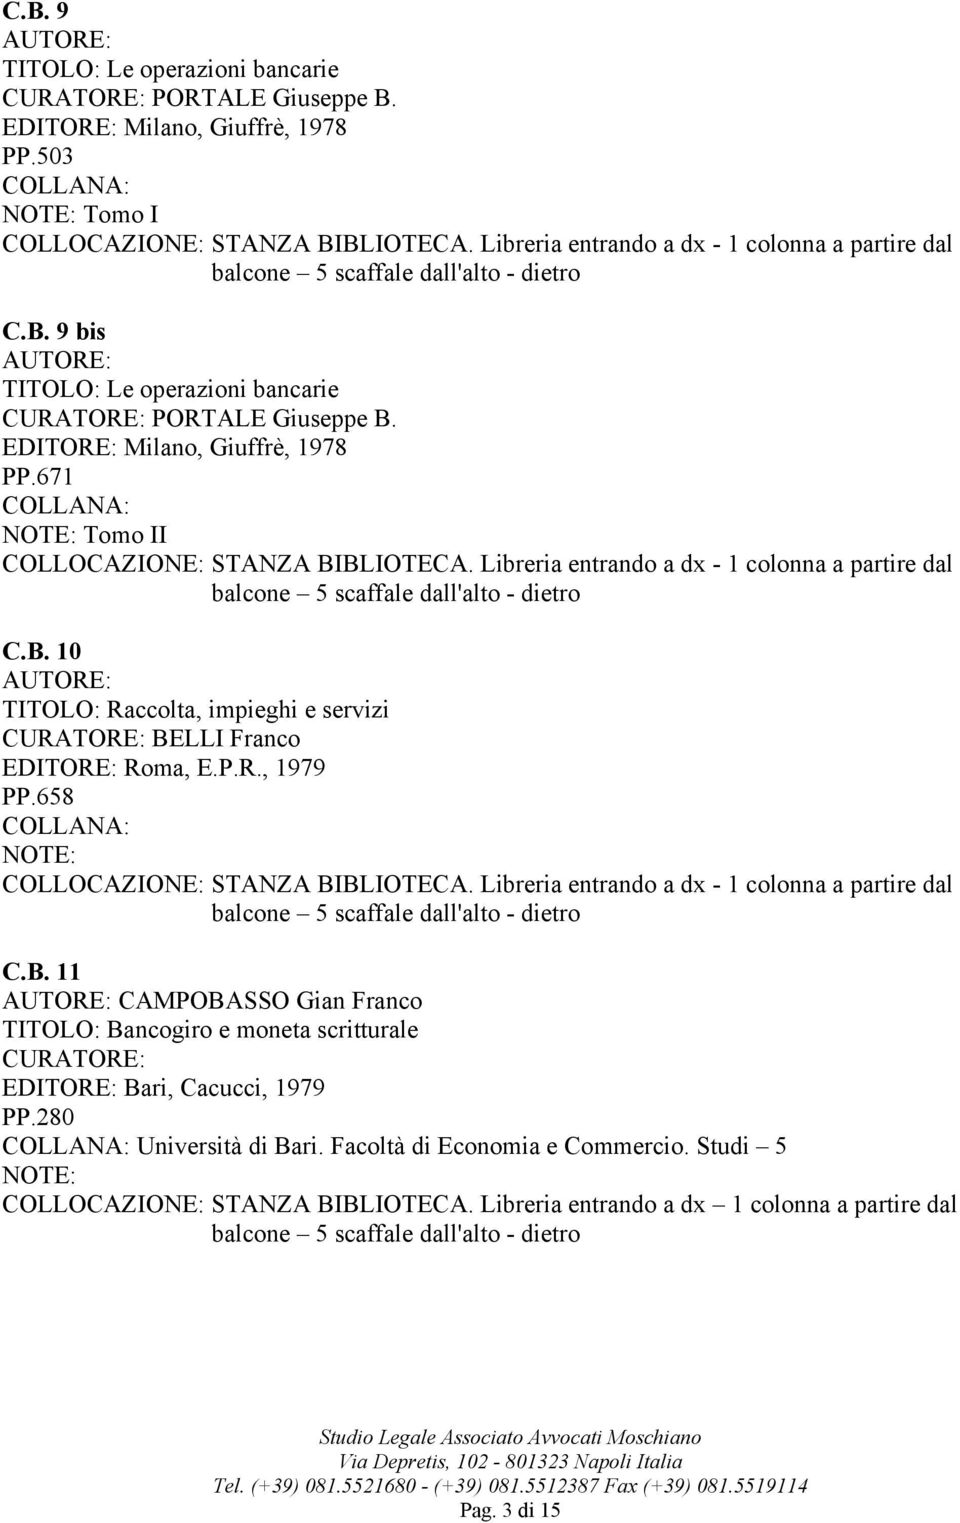 B. 11 CAMPOBASSO Gian Franco TITOLO: Bancogiro e moneta scritturale EDITORE: Bari, Cacucci, 1979 PP.280 Università di Bari.